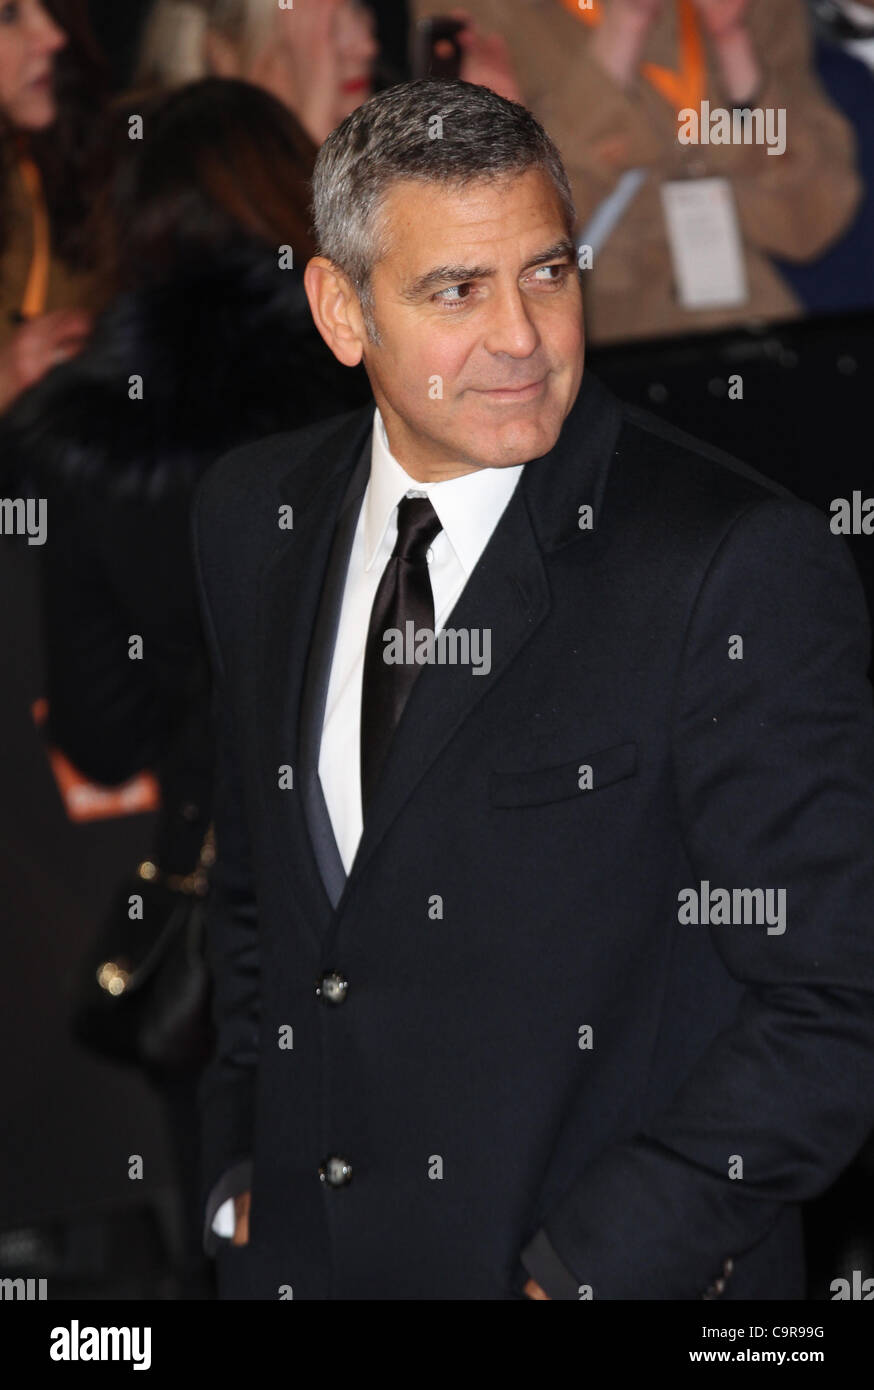 Londres, Royaume-Uni, 12/02/2012 George Clooney arrive à l'Orange British Academy film Awards (BAFTAS) Royal Opera House, Covent Garden, à Londres Banque D'Images